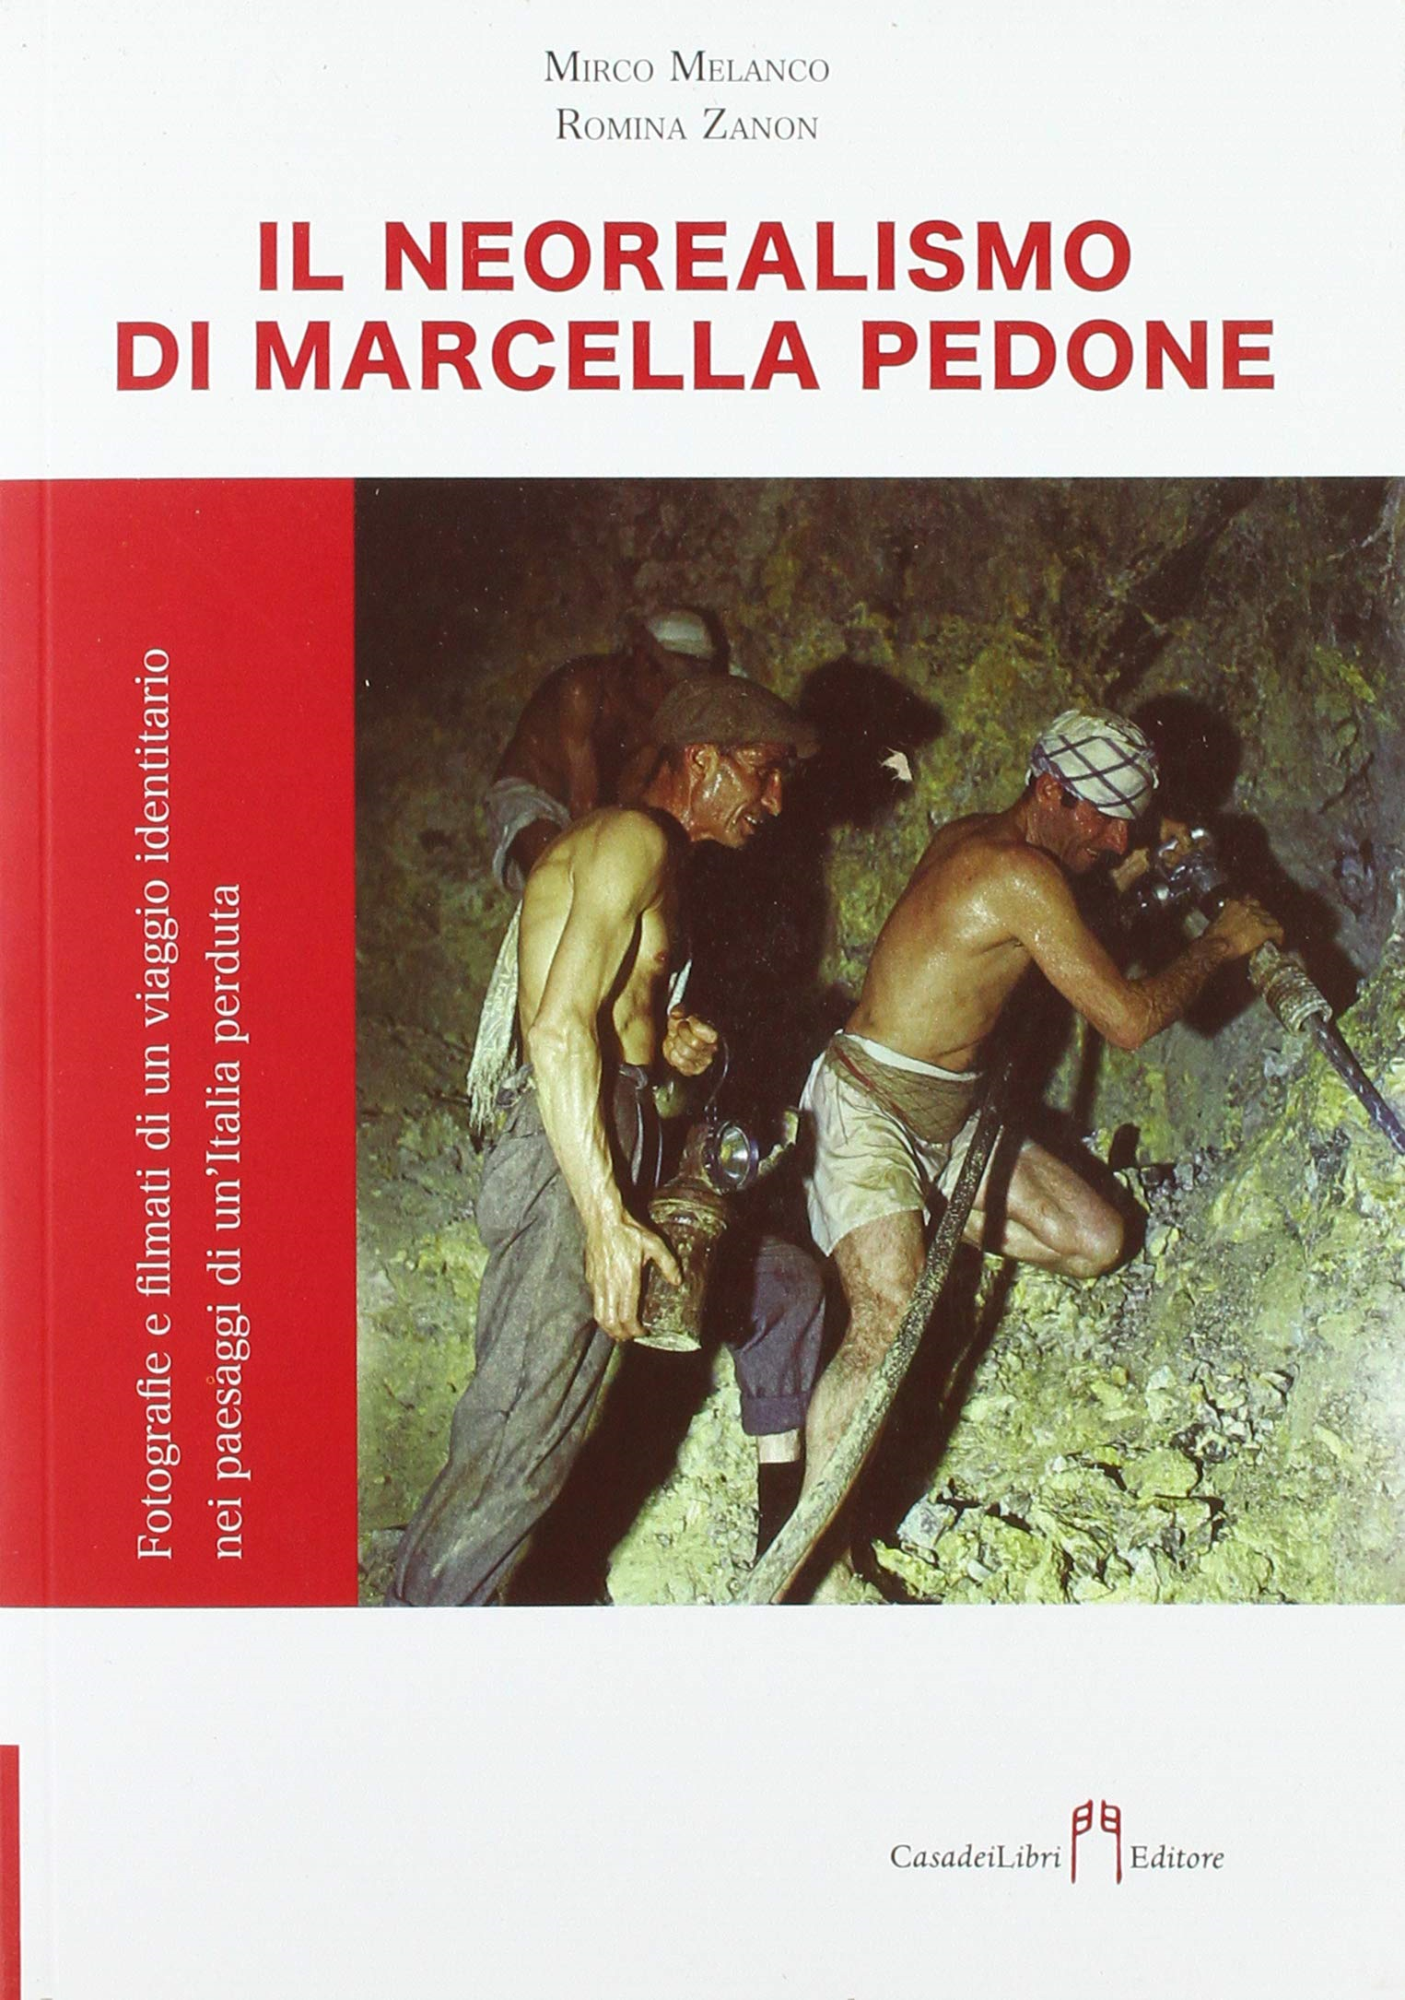 Libri Mirco Melanco / Zanon Romina - Neorealismo Di Marcella Pedone NUOVO SIGILLATO, EDIZIONE DEL 18/11/2020 SUBITO DISPONIBILE